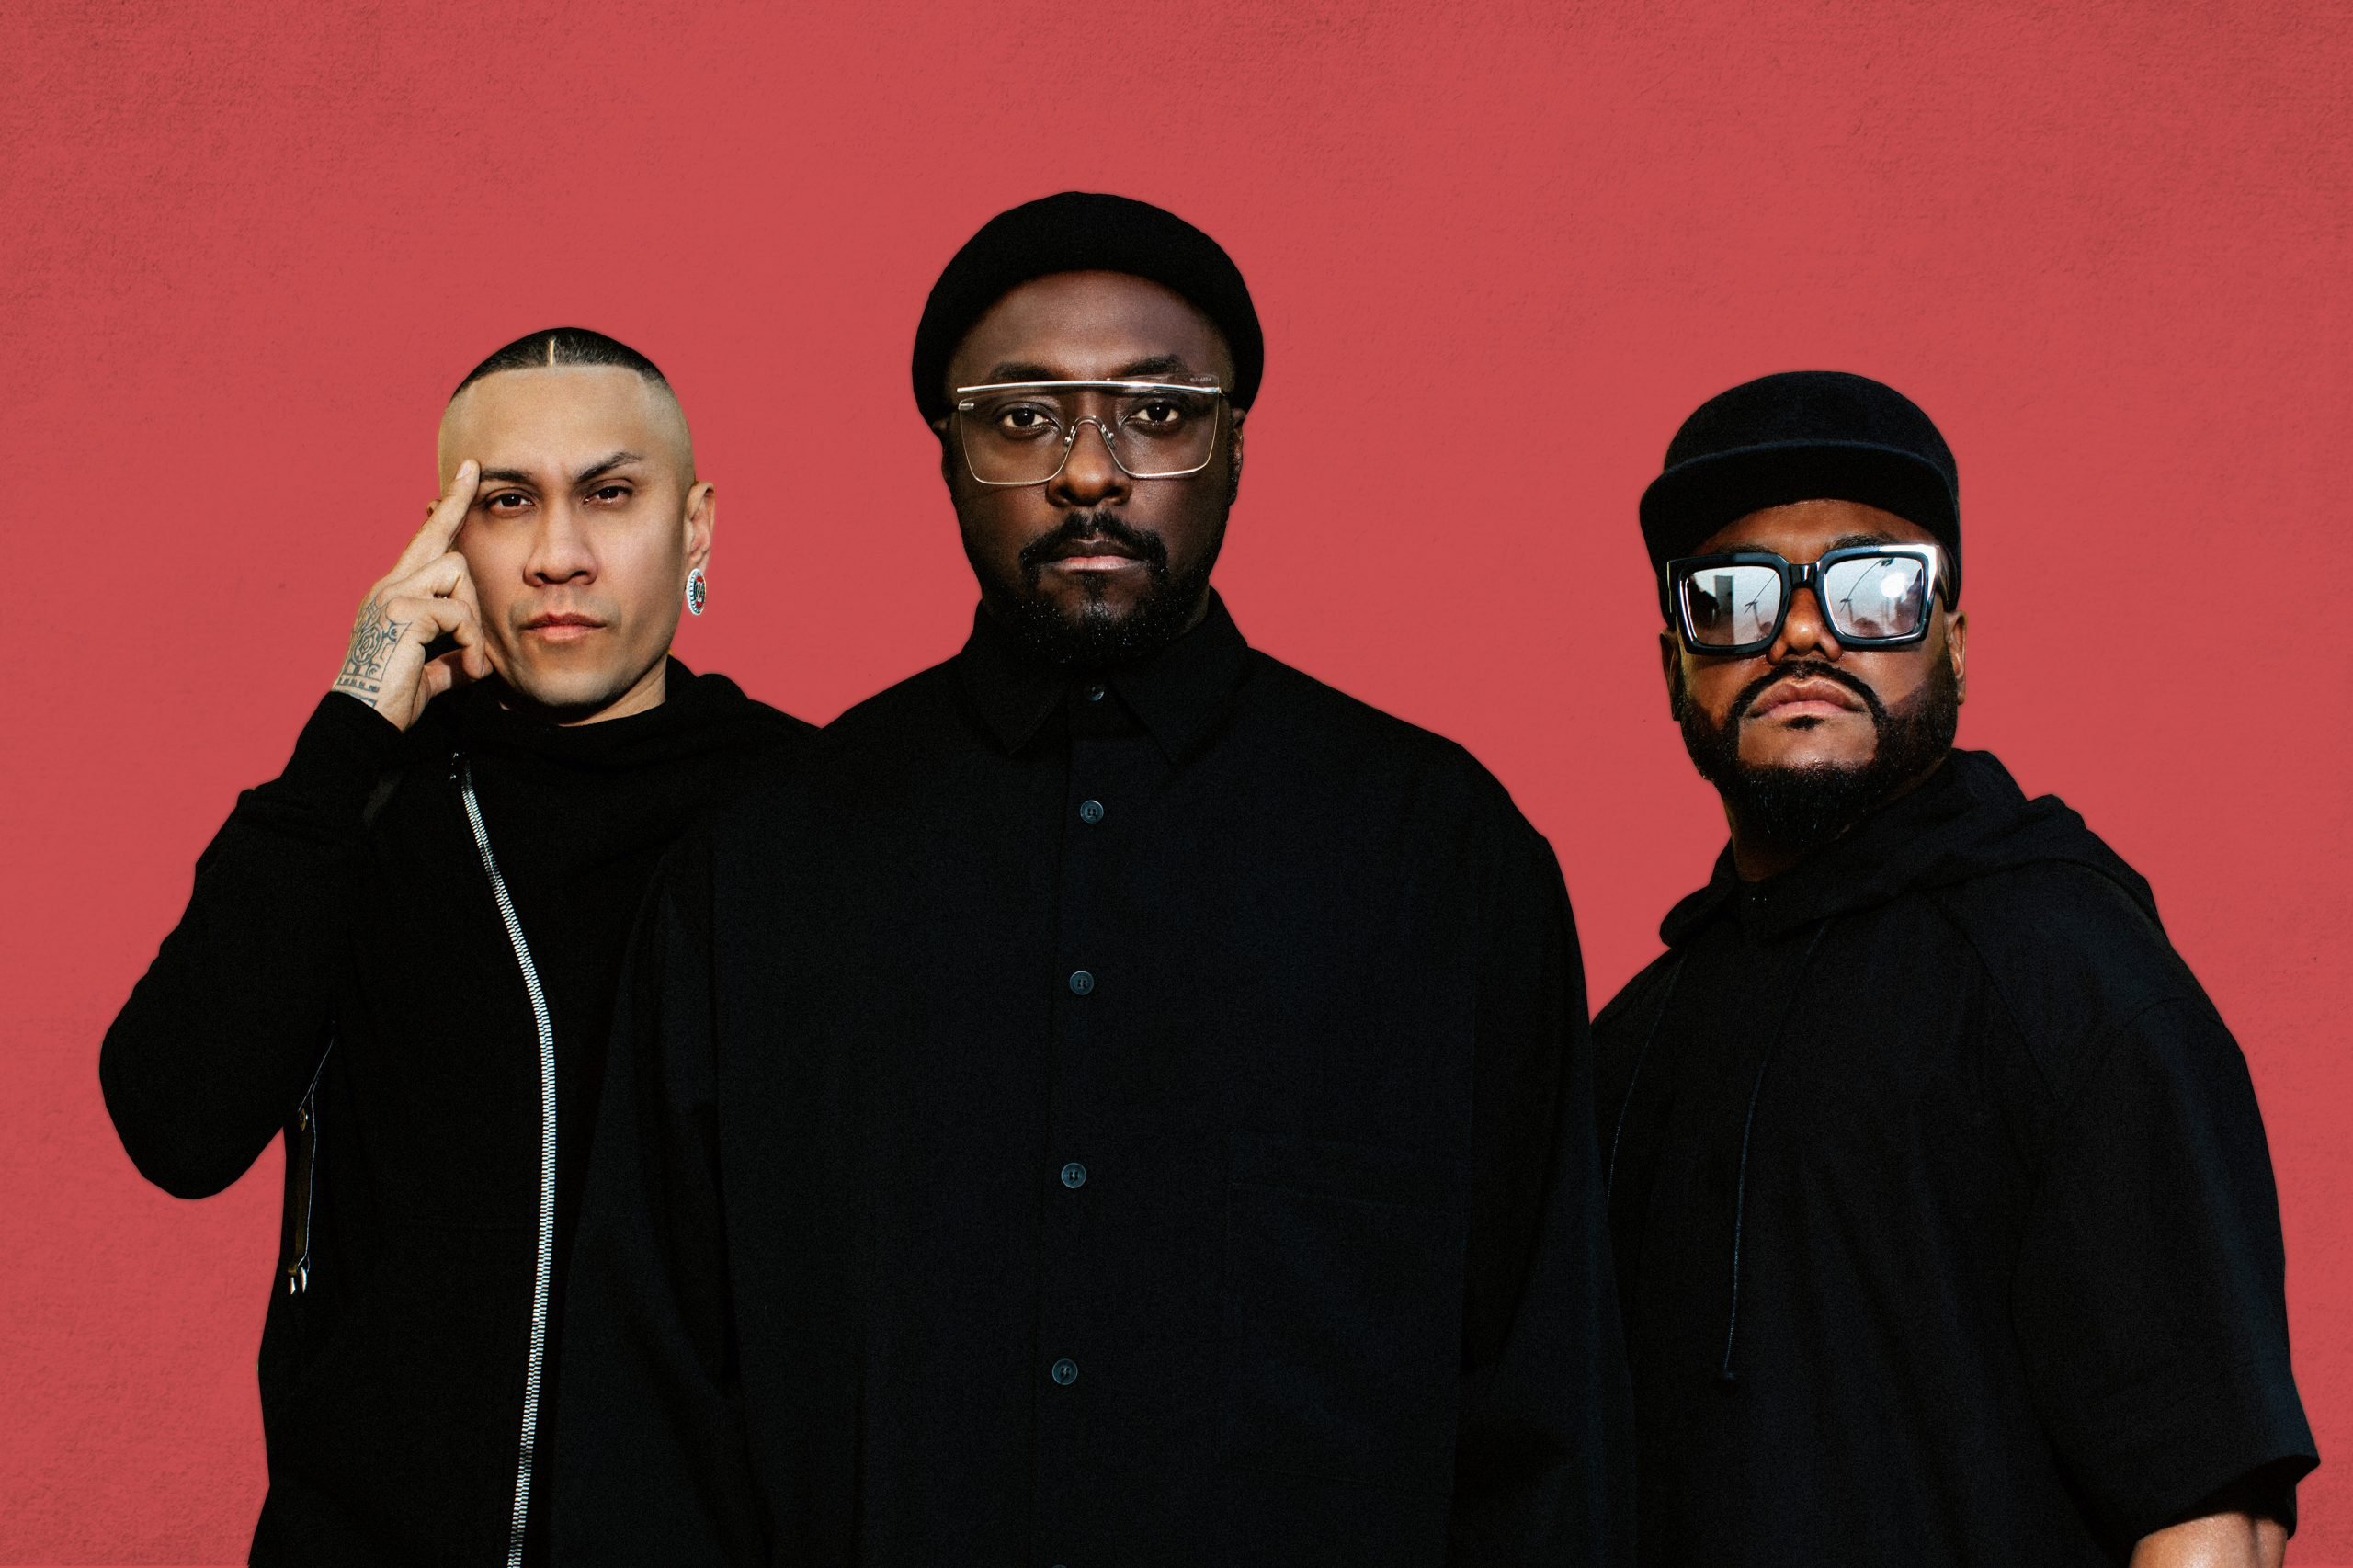 Concierto de Black Eyed Peas en Miami vendrá con algunas sorpresas